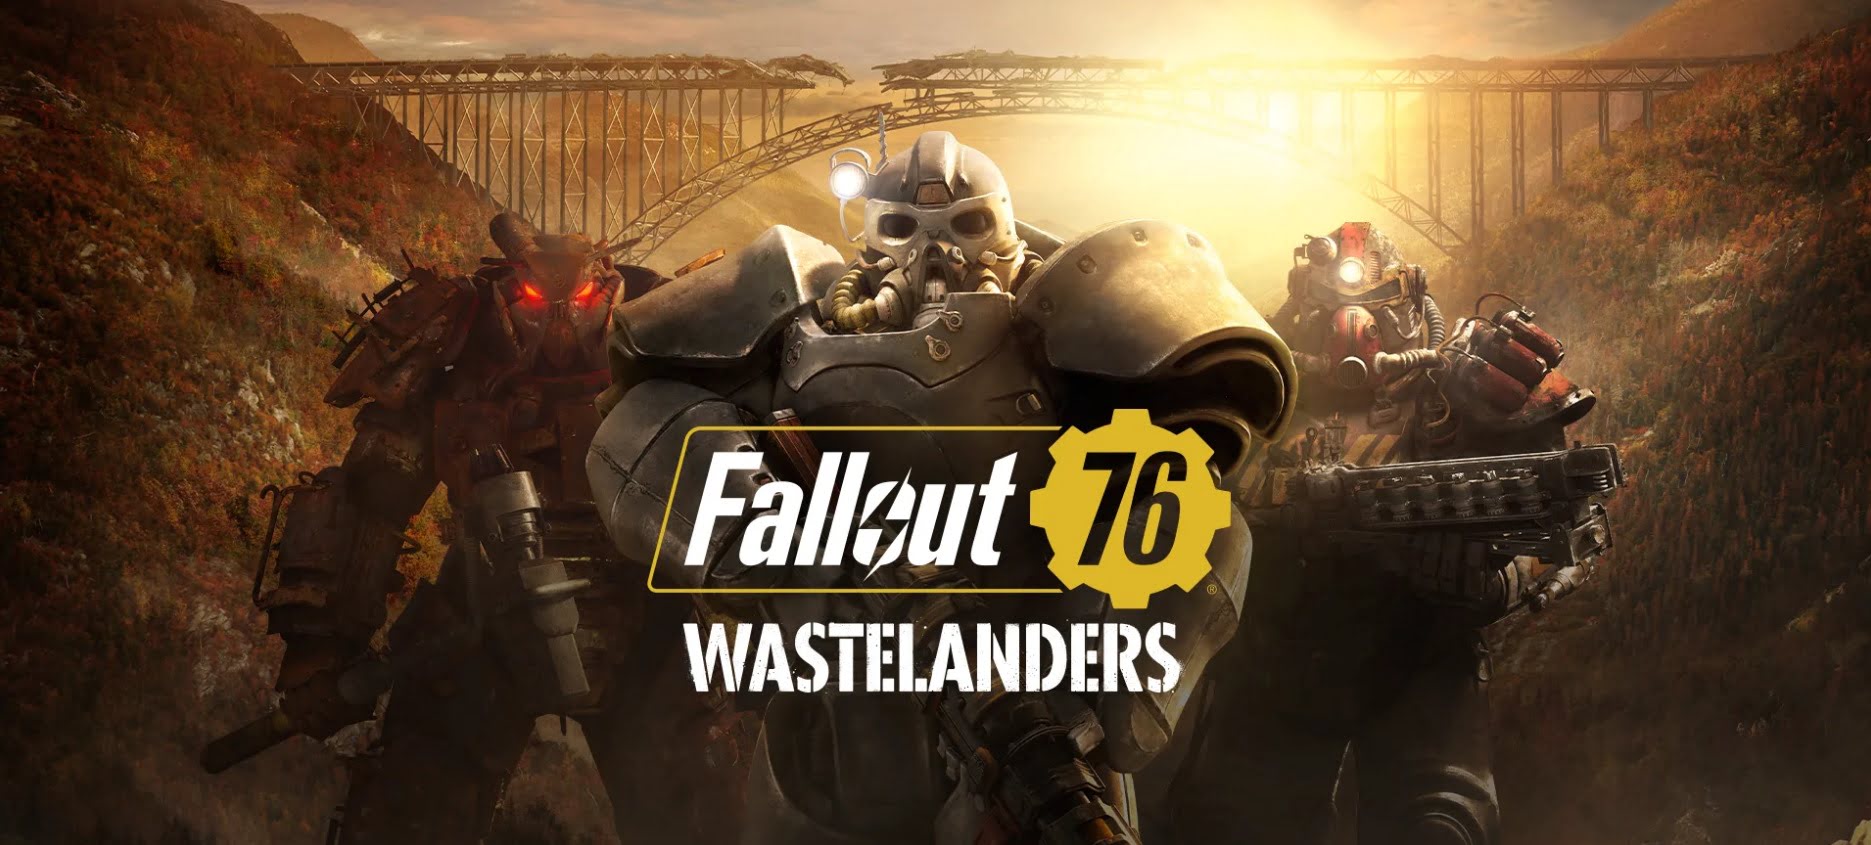 Fallout 76: Wastelanders já está disponível para jogar